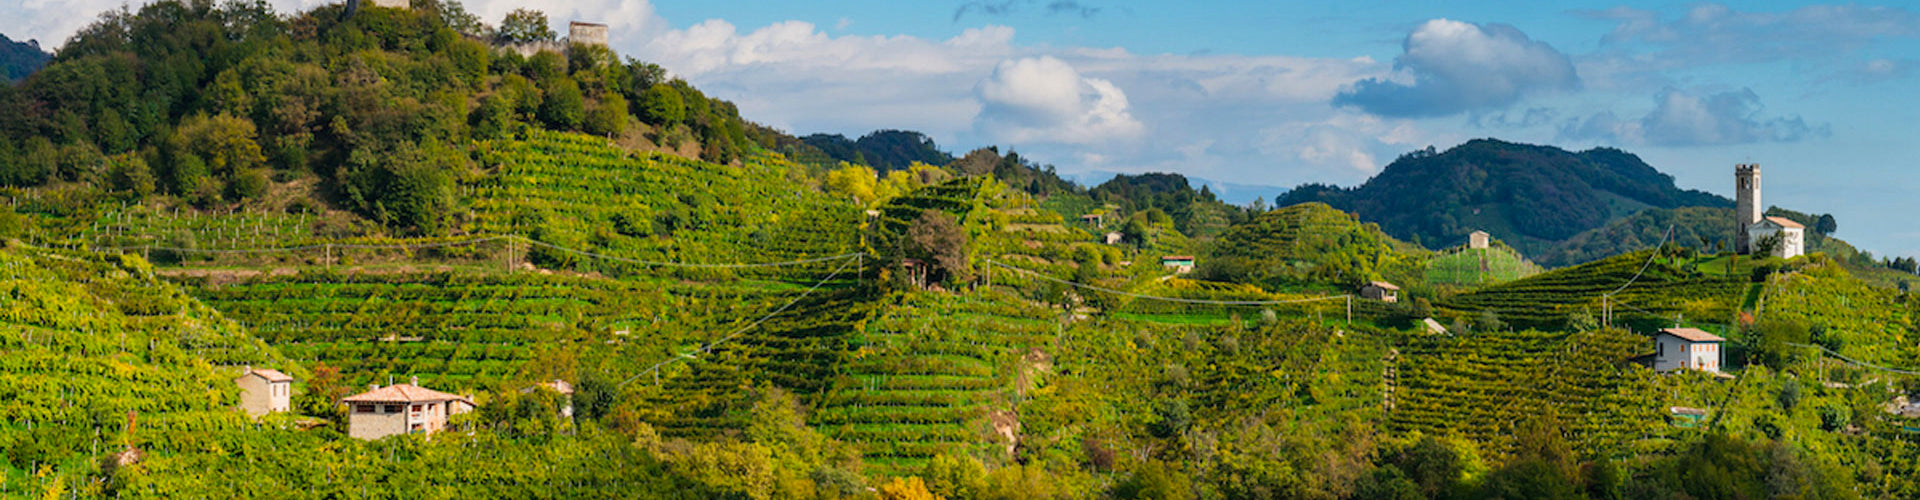 The vineyards of Carpenè Malvolti in the hills of Conegliano, Italy